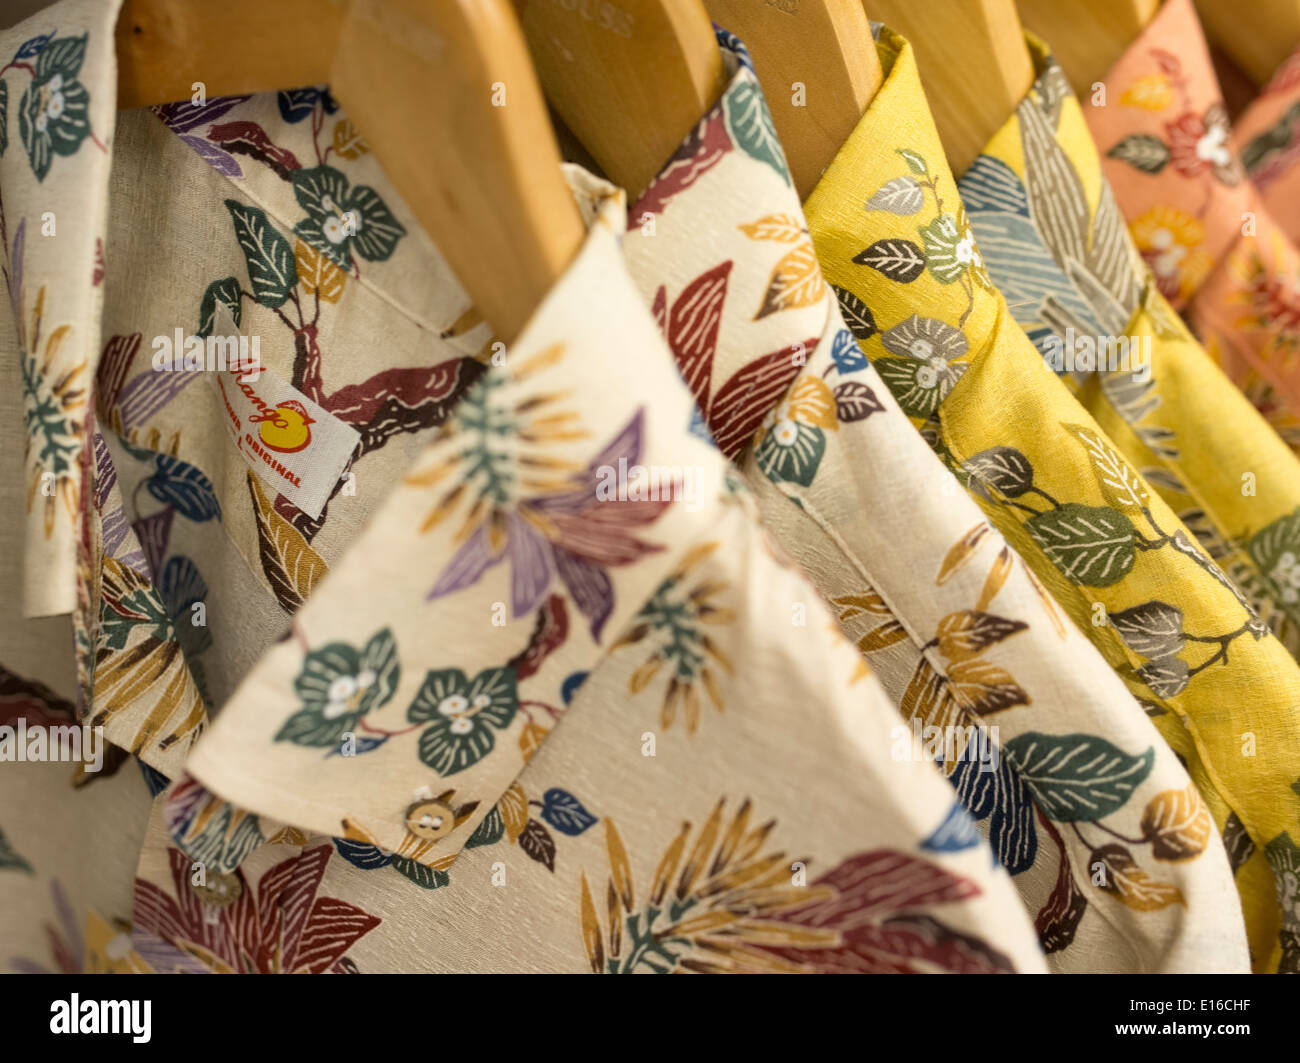 Kariyushi shirts at 'Mango' kariyushi shirt store, Kokusai Street, Naha, Okinawa Stock Photo